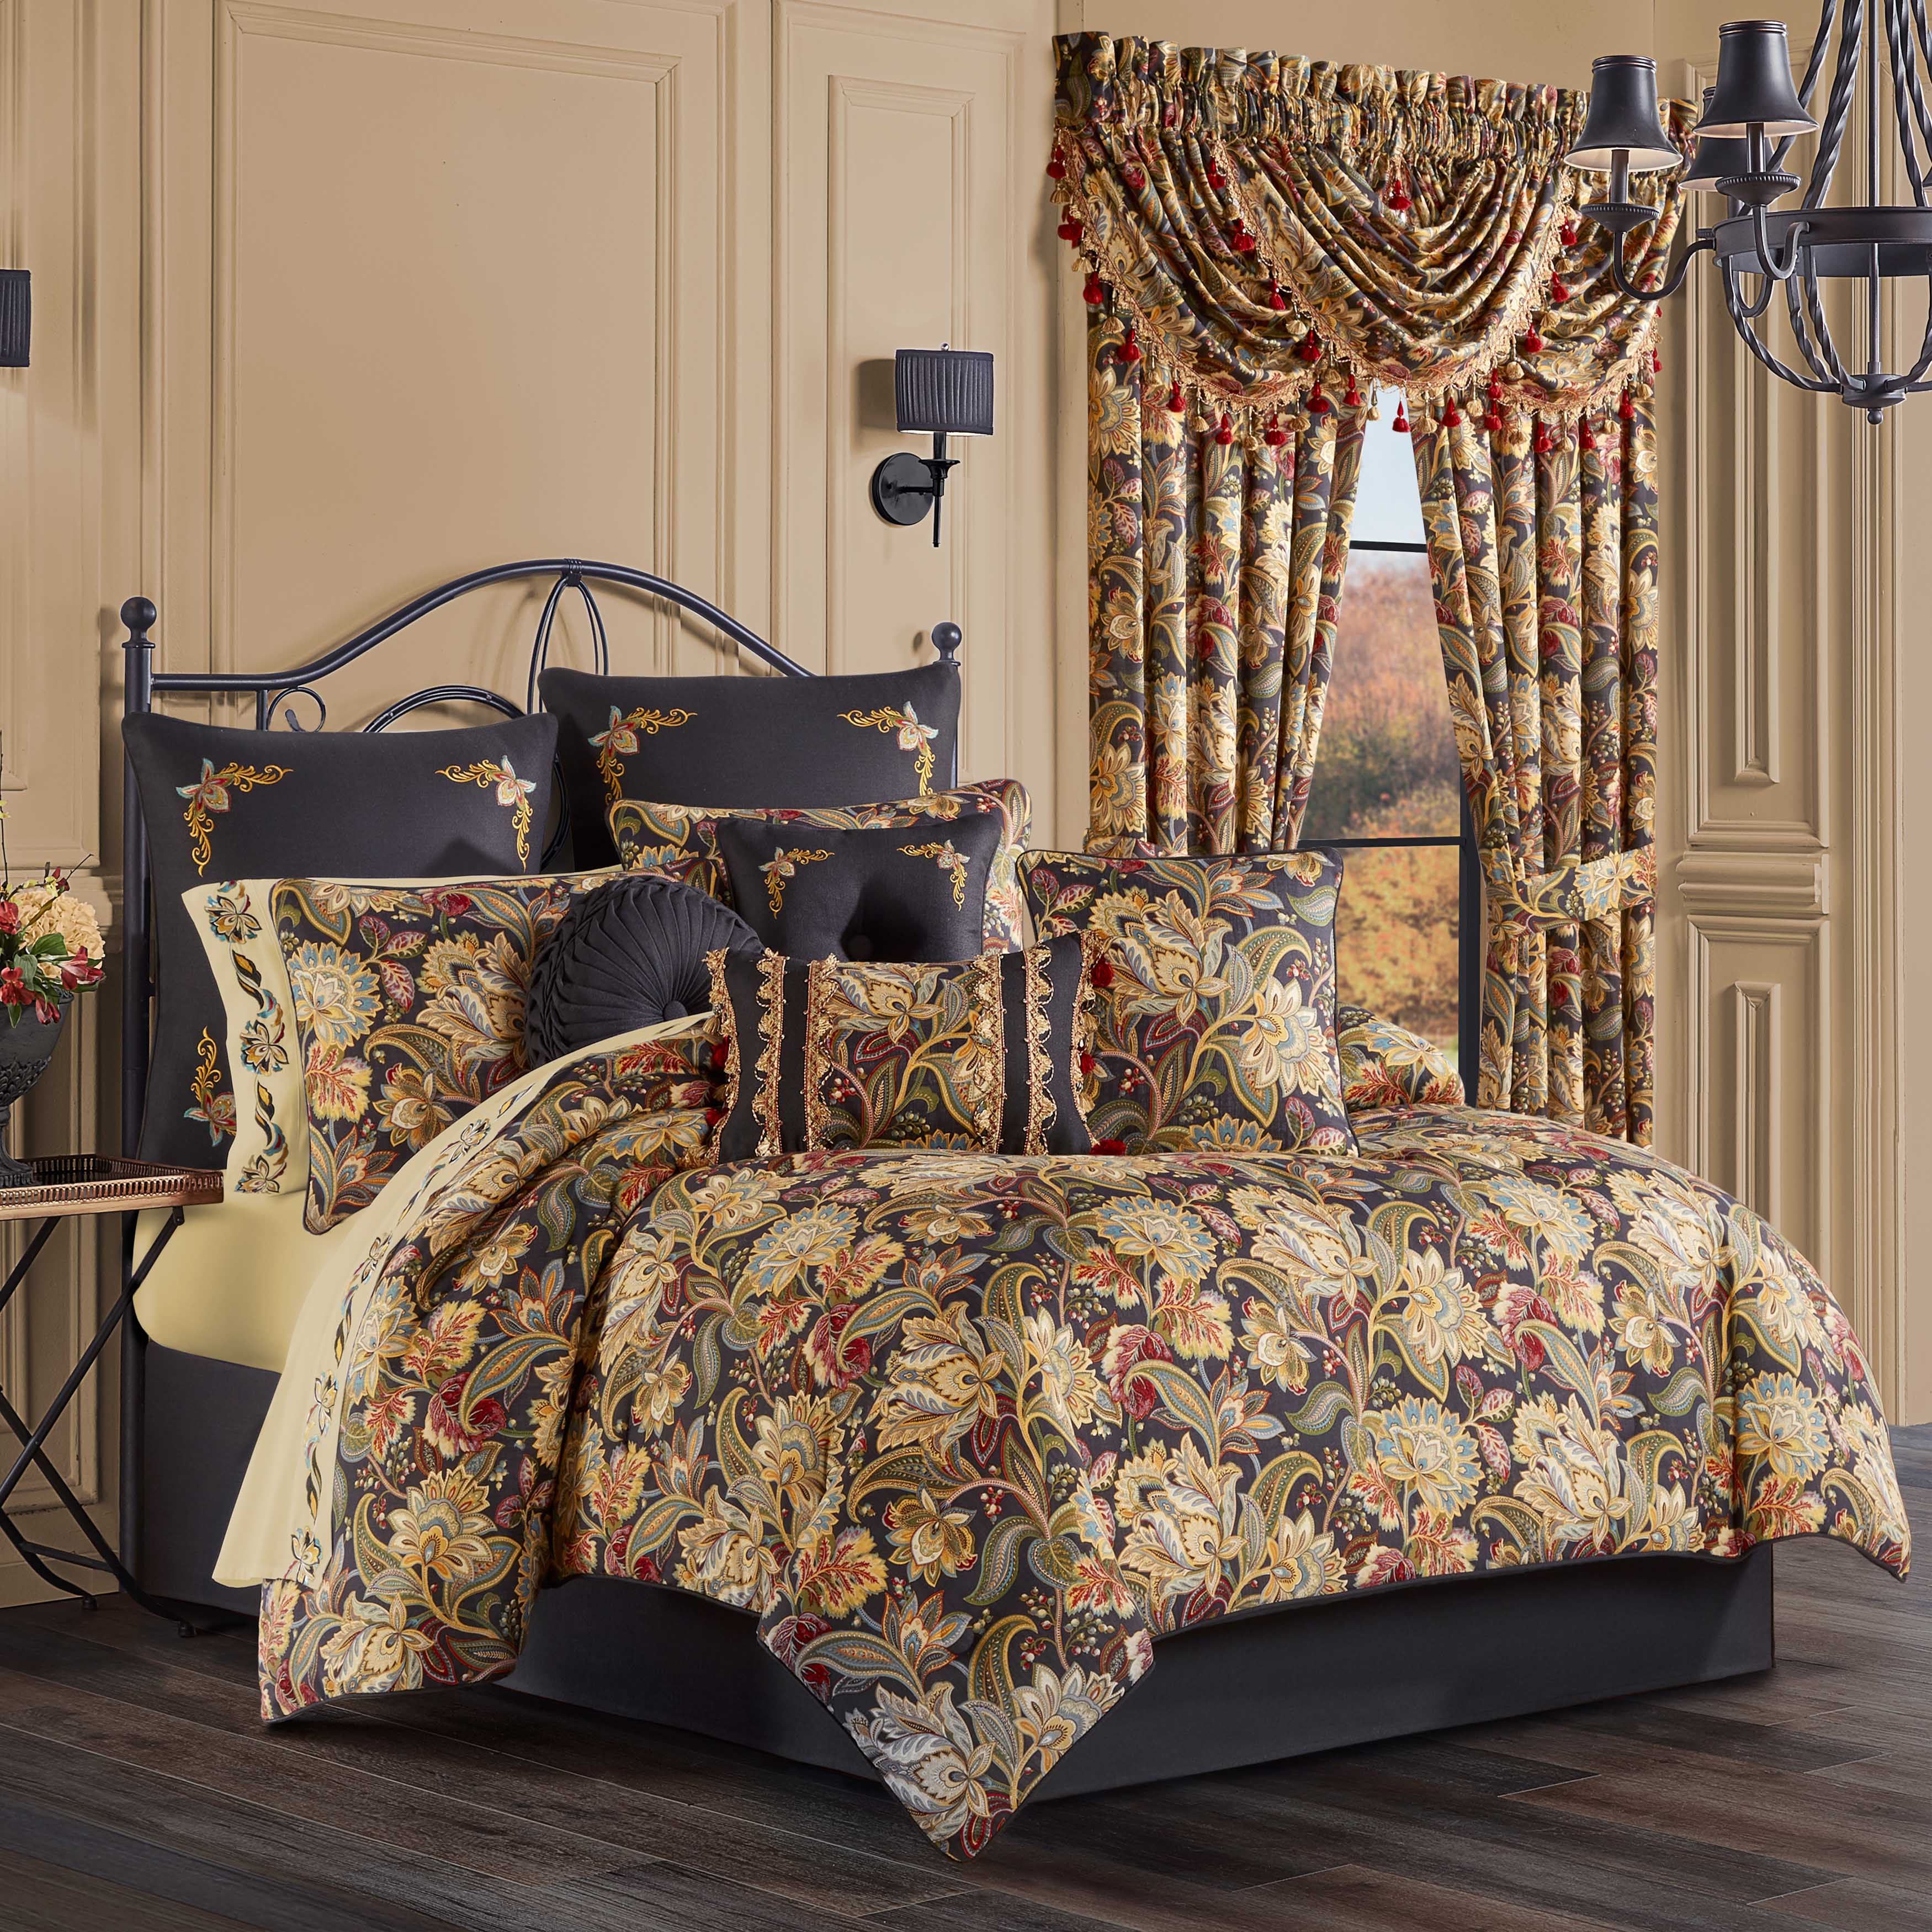 Black Veinstone Louis Vuitton Bedding Sets Bed Sets, Bedroom Sets, Comforter  Sets, Duvet Cover, Bedspread